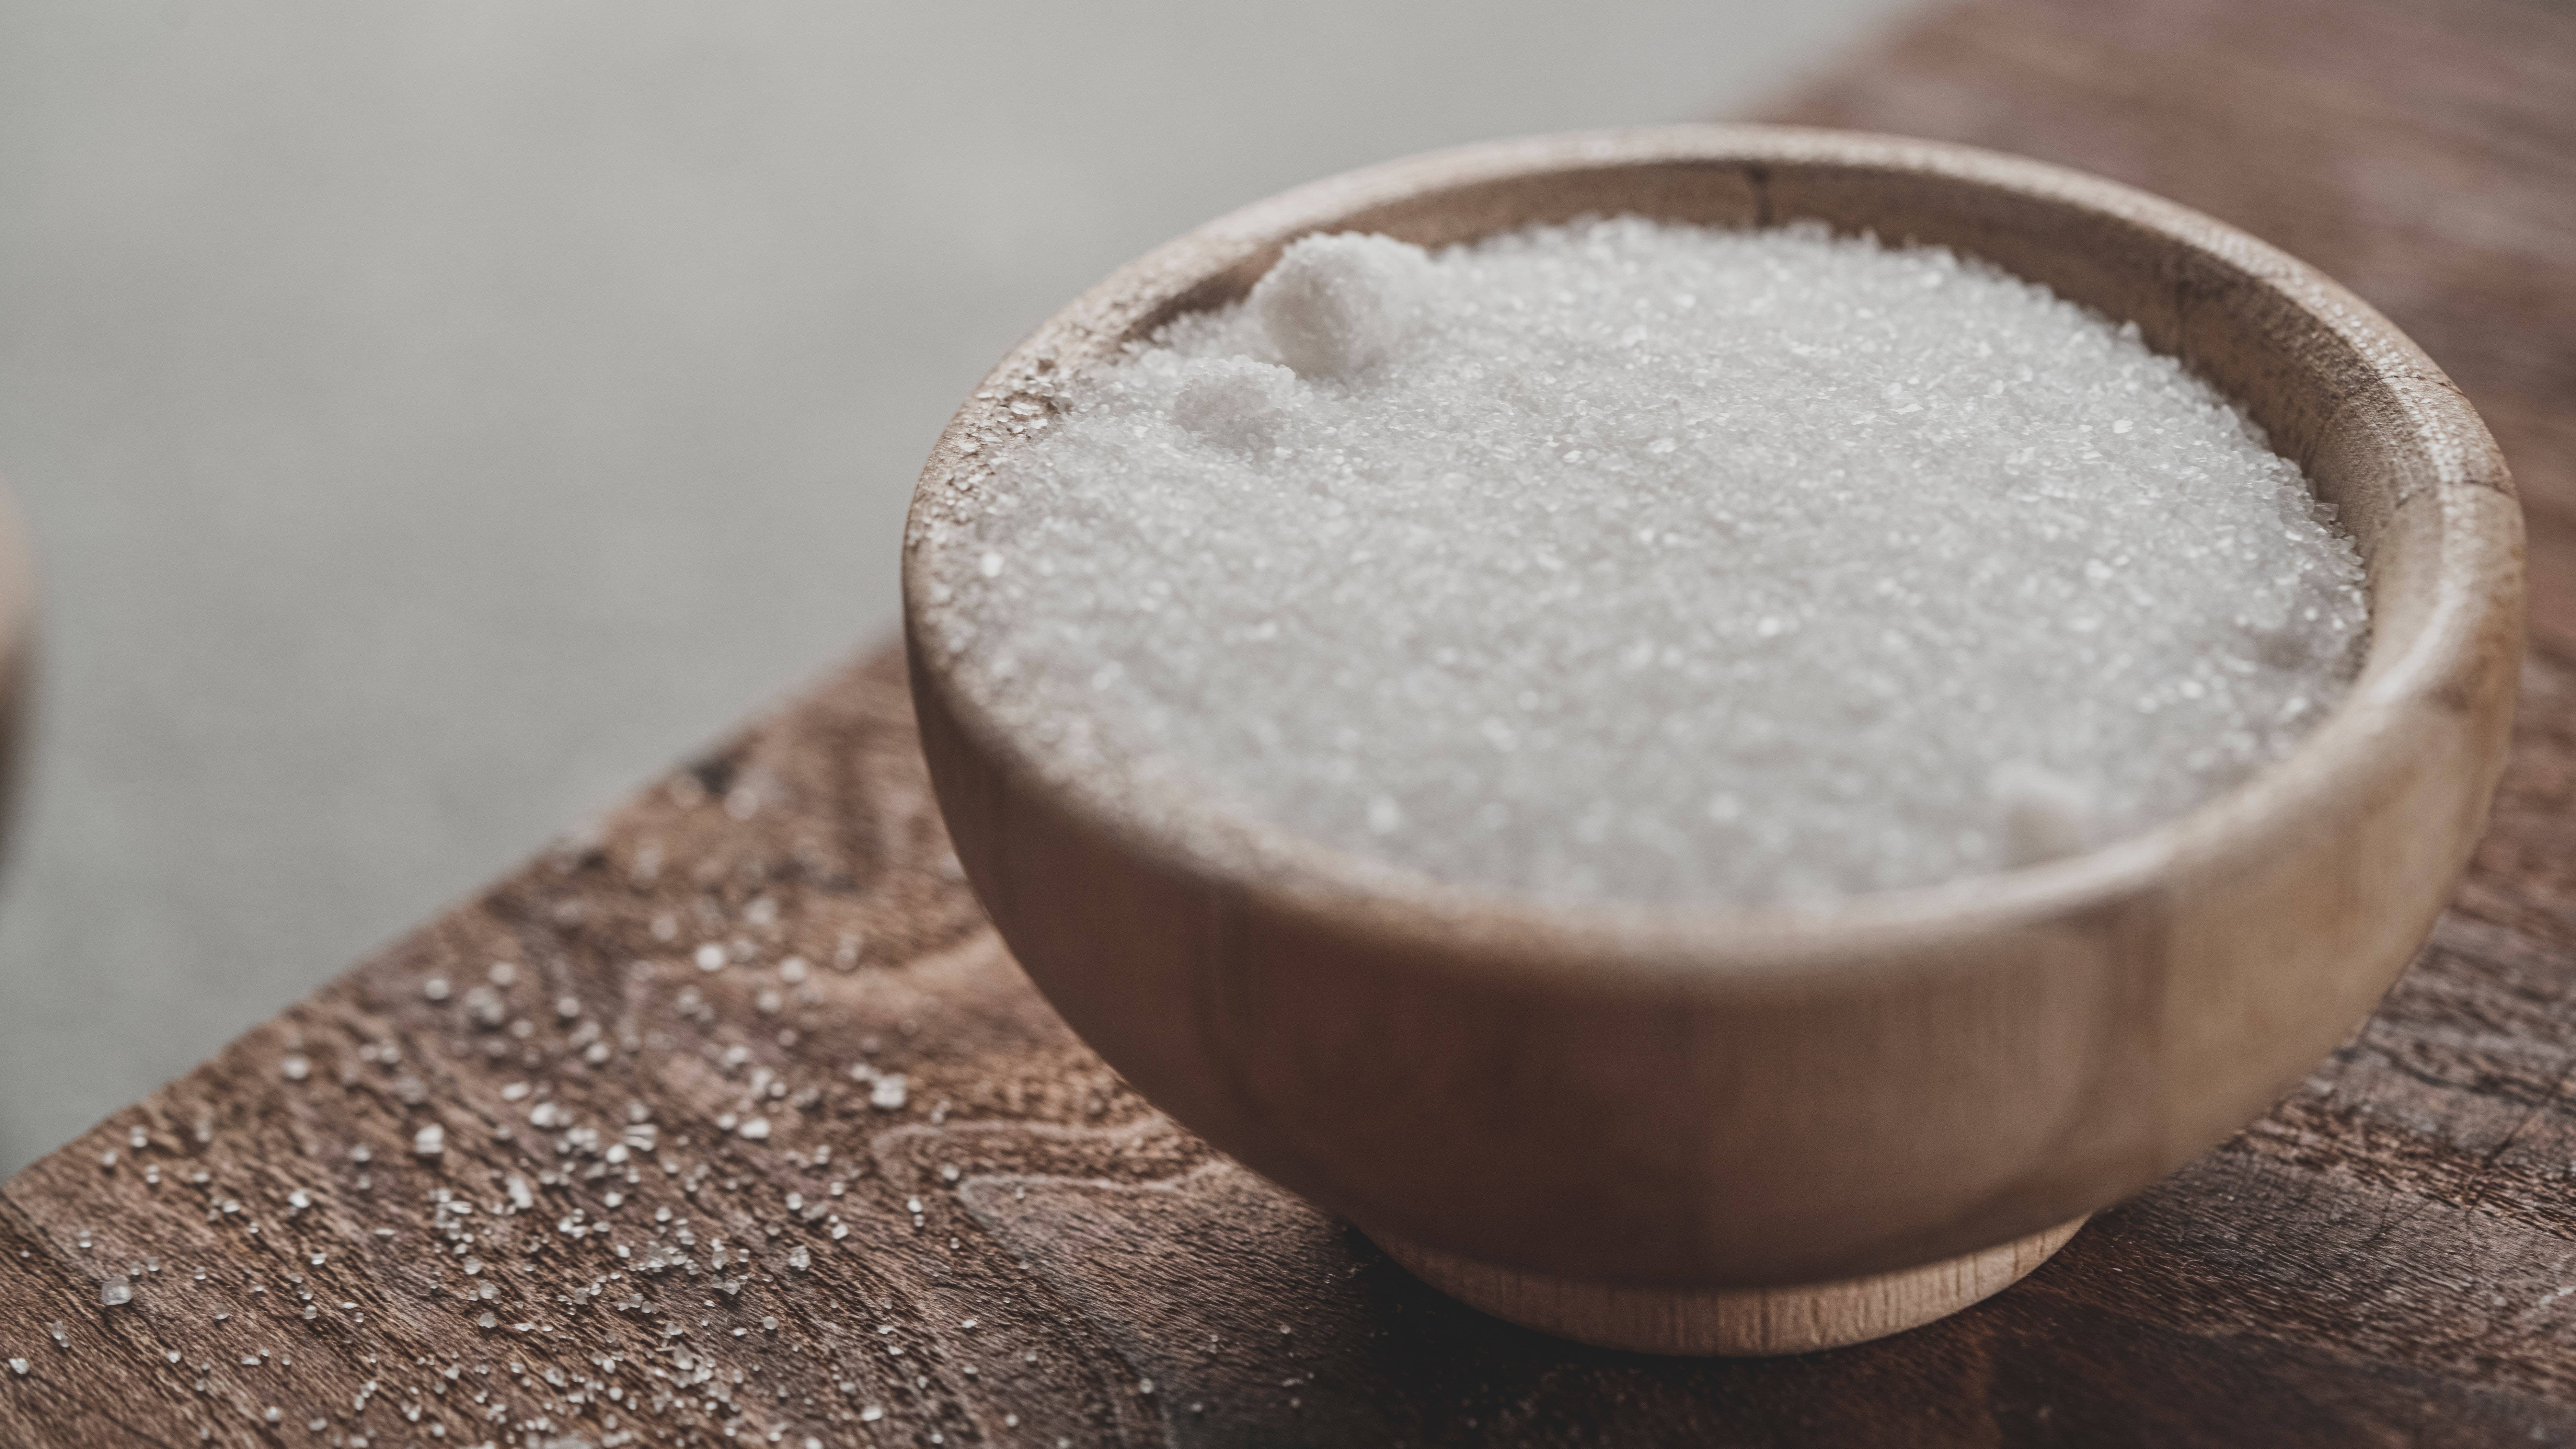 制作成品糖,以及以原糖或砂糖为原料精炼加工各种精制糖的生产活动